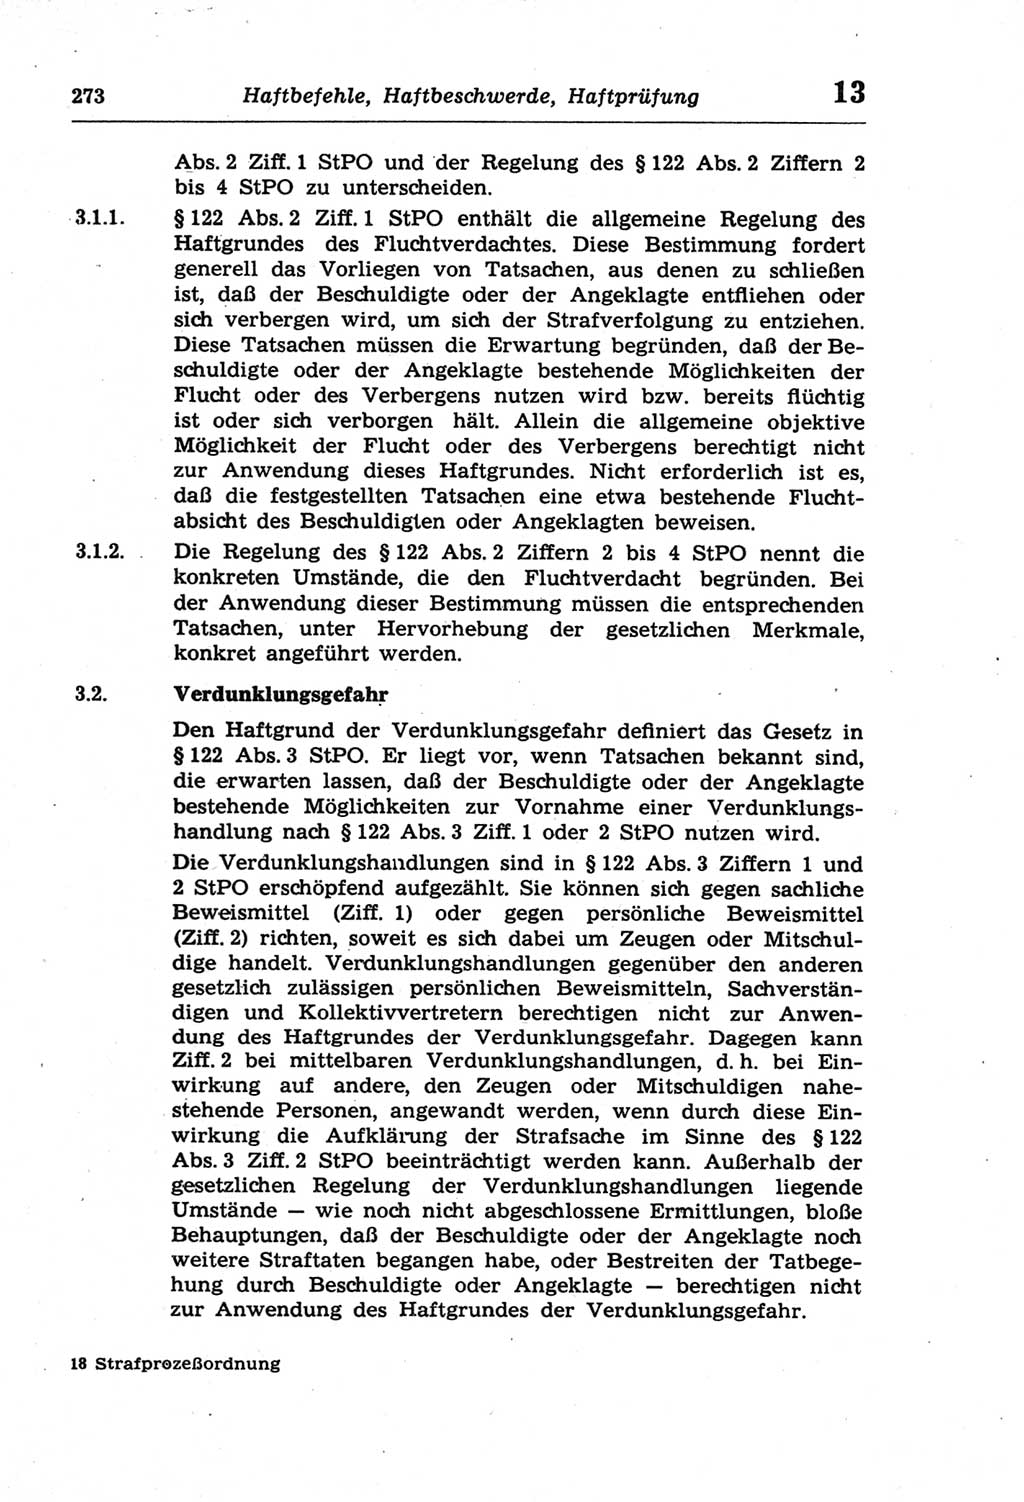 Strafprozeßordnung (StPO) der Deutschen Demokratischen Republik (DDR) und angrenzende Gesetze und Bestimmungen 1968, Seite 273 (StPO Ges. Bstgn. DDR 1968, S. 273)